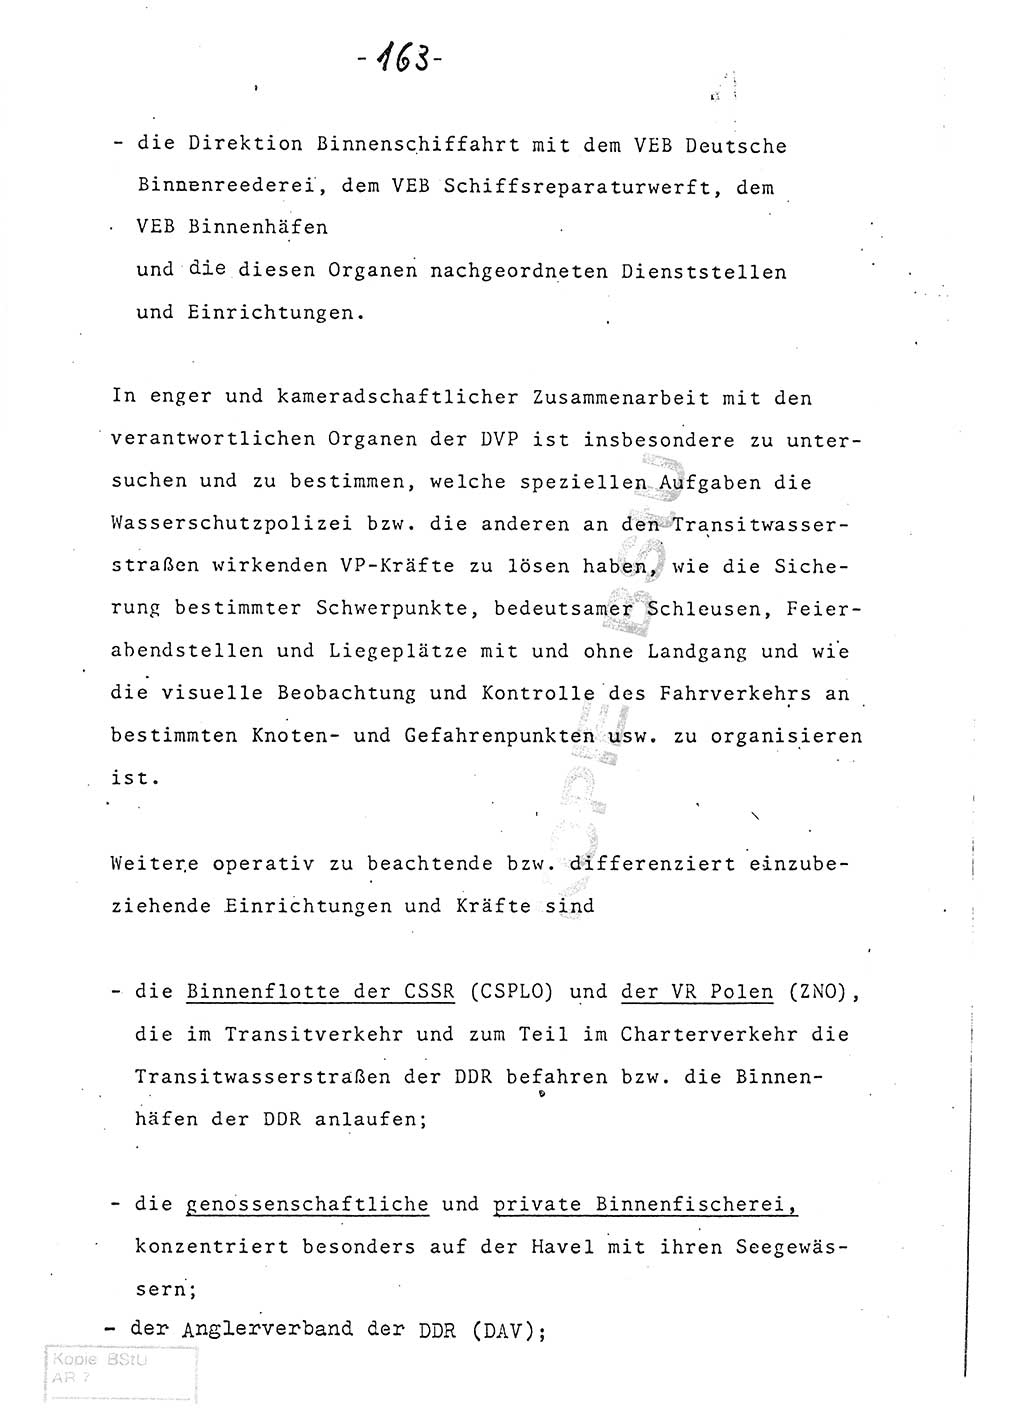 Referat (Entwurf) des Genossen Minister (Generaloberst Erich Mielke) auf der Dienstkonferenz 1972, Ministerium für Staatssicherheit (MfS) [Deutsche Demokratische Republik (DDR)], Der Minister, Geheime Verschlußsache (GVS) 008-150/72, Berlin 25.2.1972, Seite 163 (Ref. Entw. DK MfS DDR Min. GVS 008-150/72 1972, S. 163)